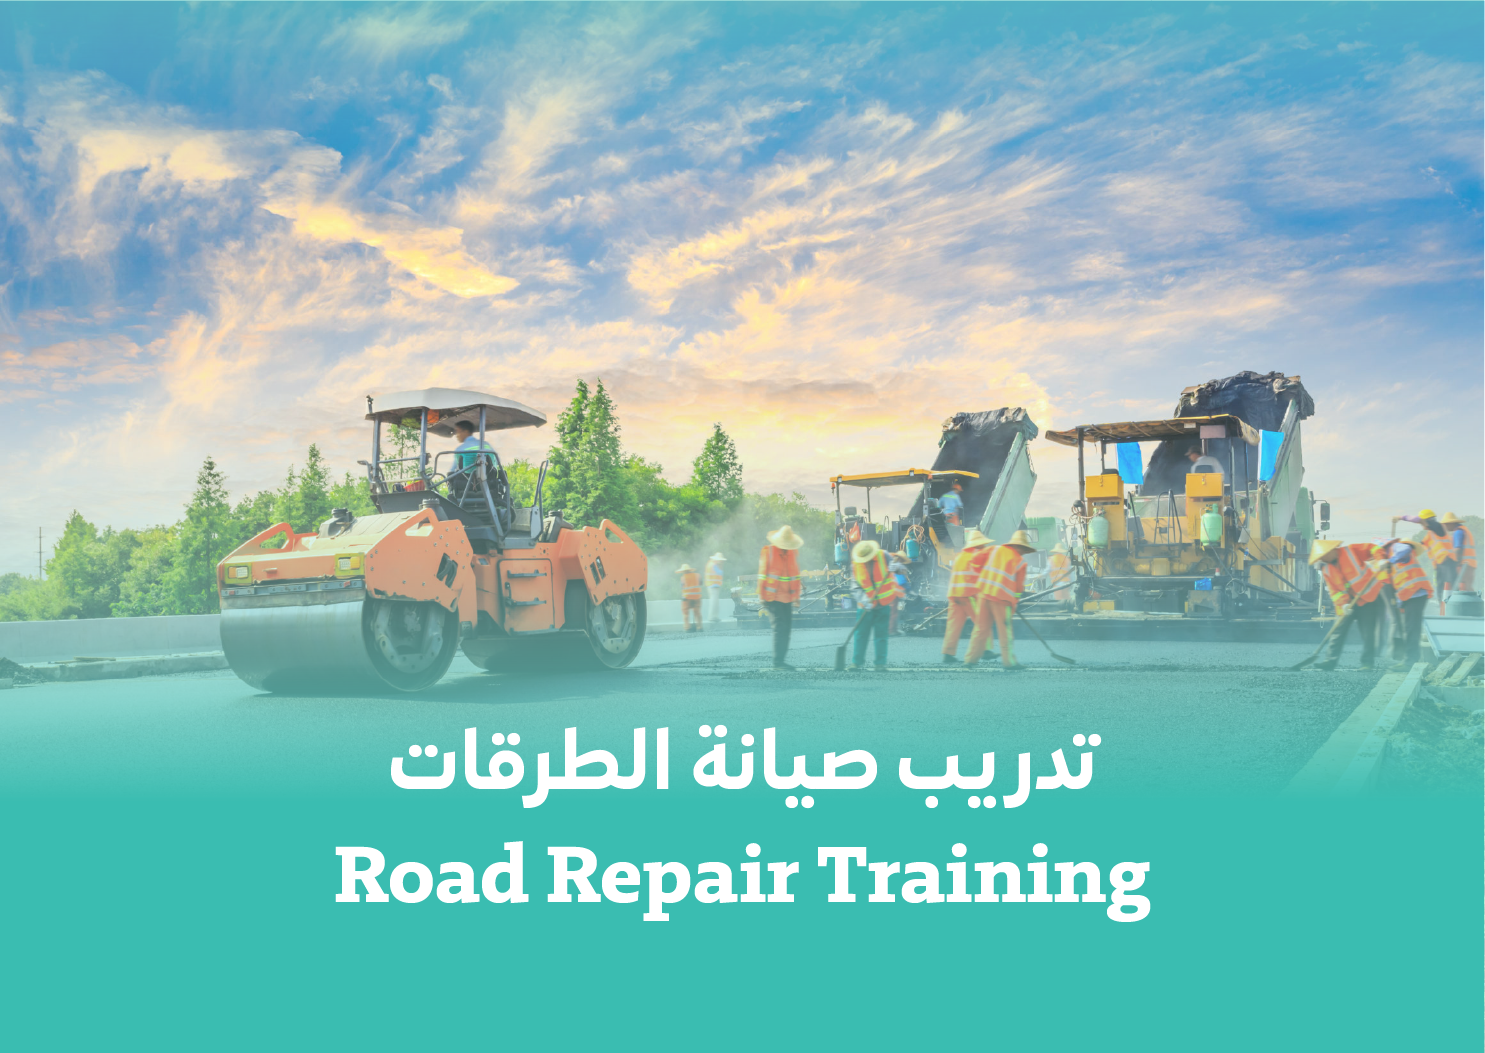 Road Repair Training